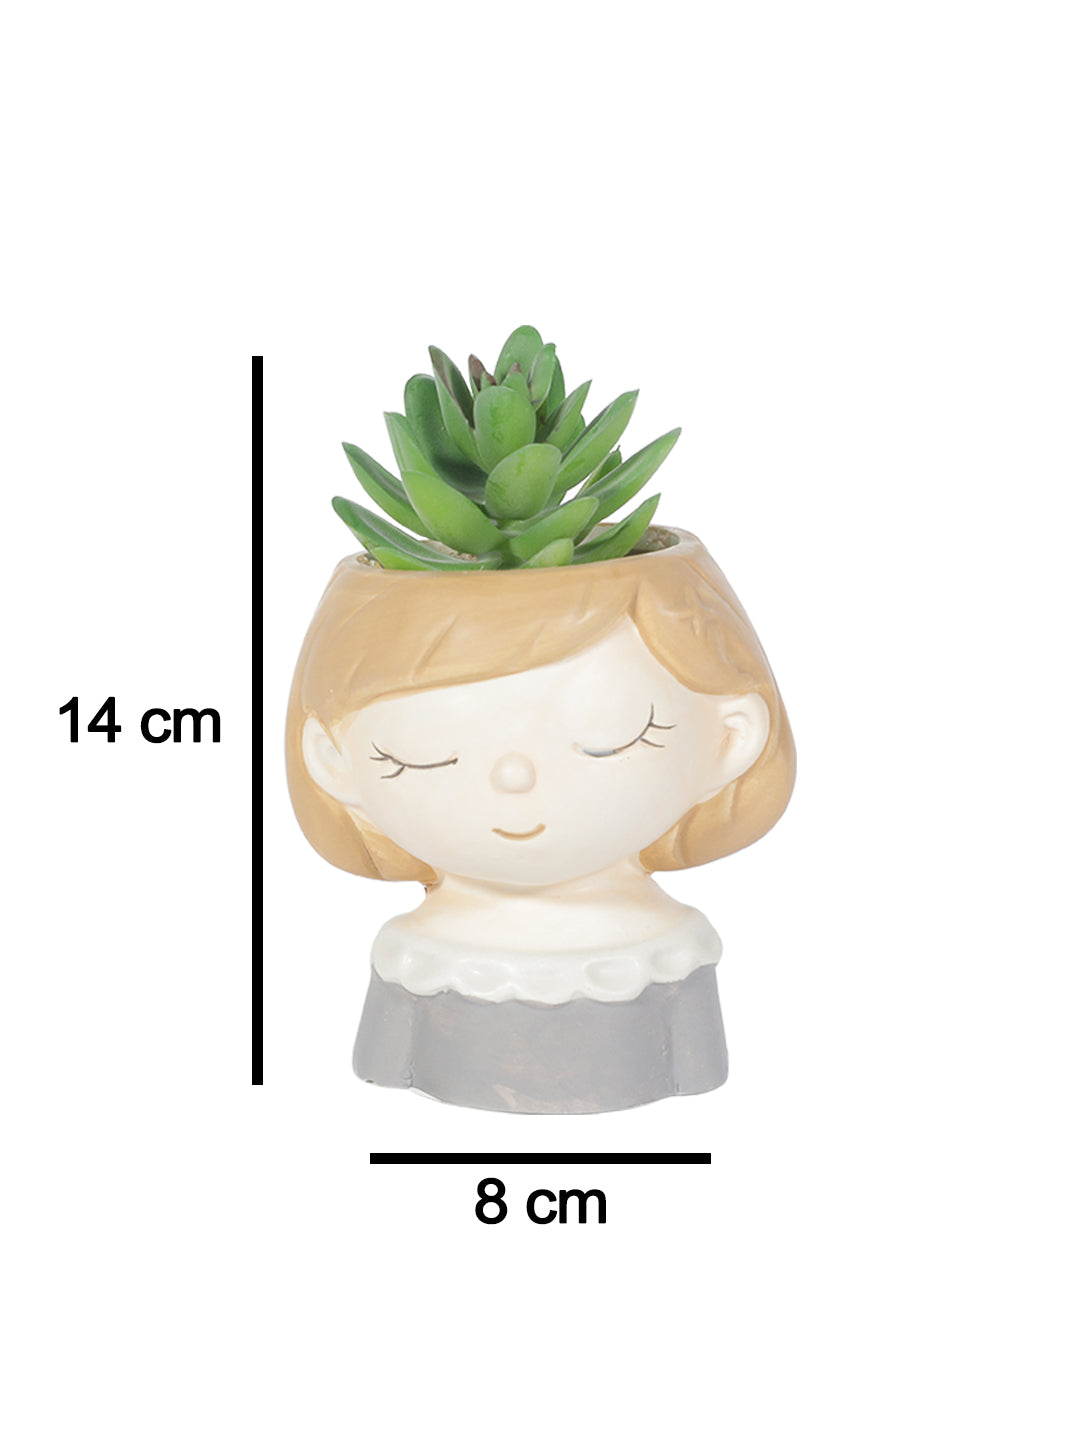 VON CASA Lady Face Artificial Planter Pot With Flowers